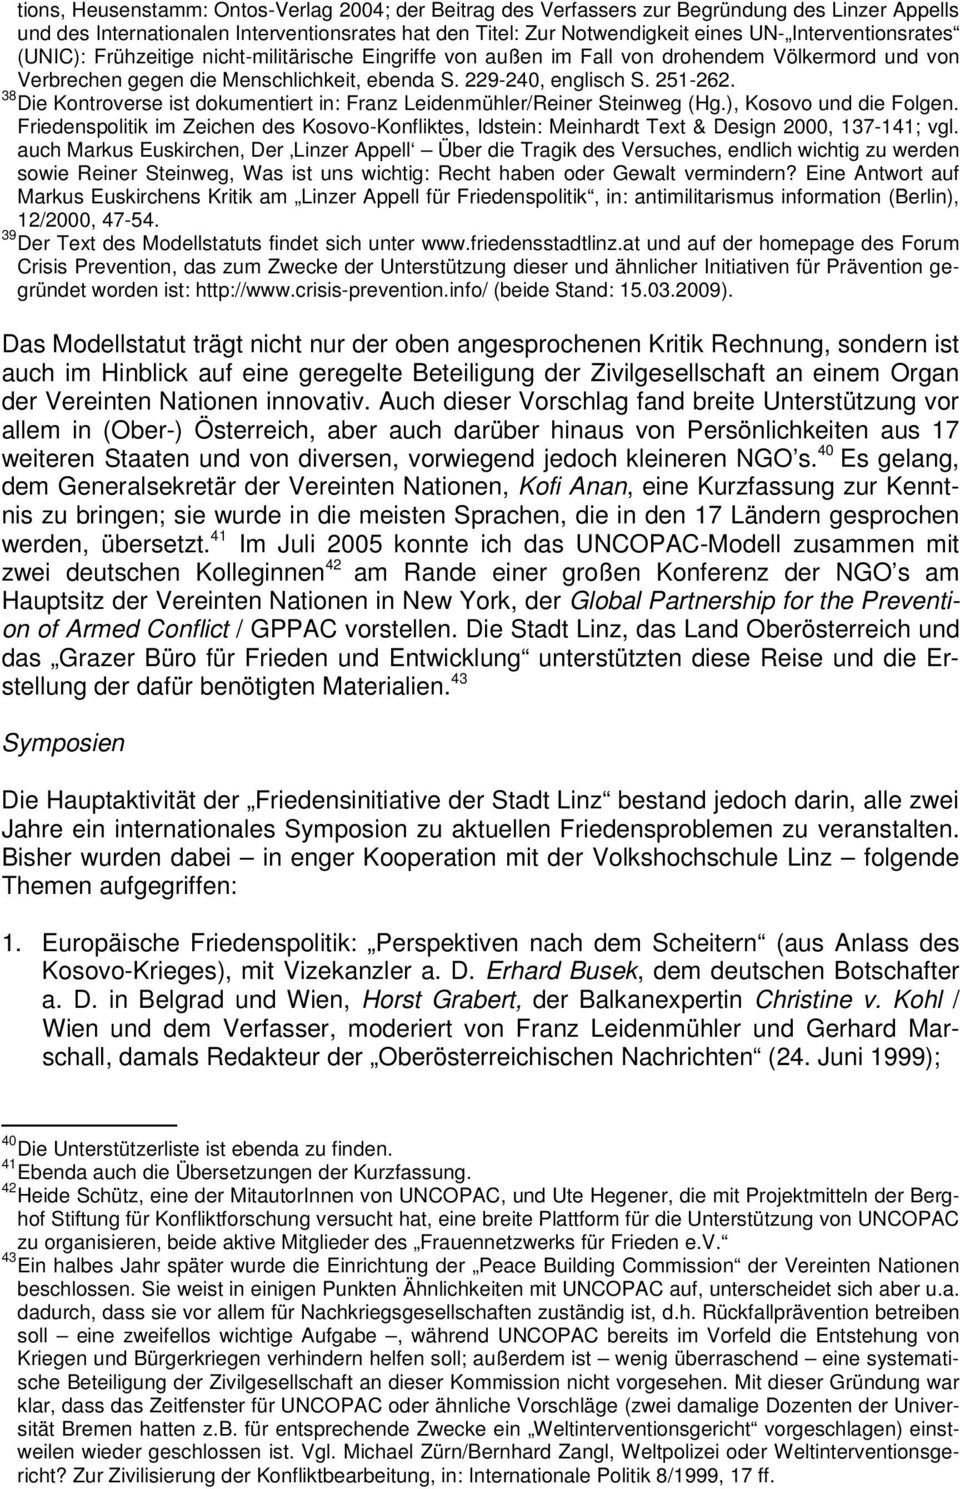 38 Die Kontroverse ist dokumentiert in: Franz Leidenmühler/Reiner Steinweg (Hg.), Kosovo und die Folgen.